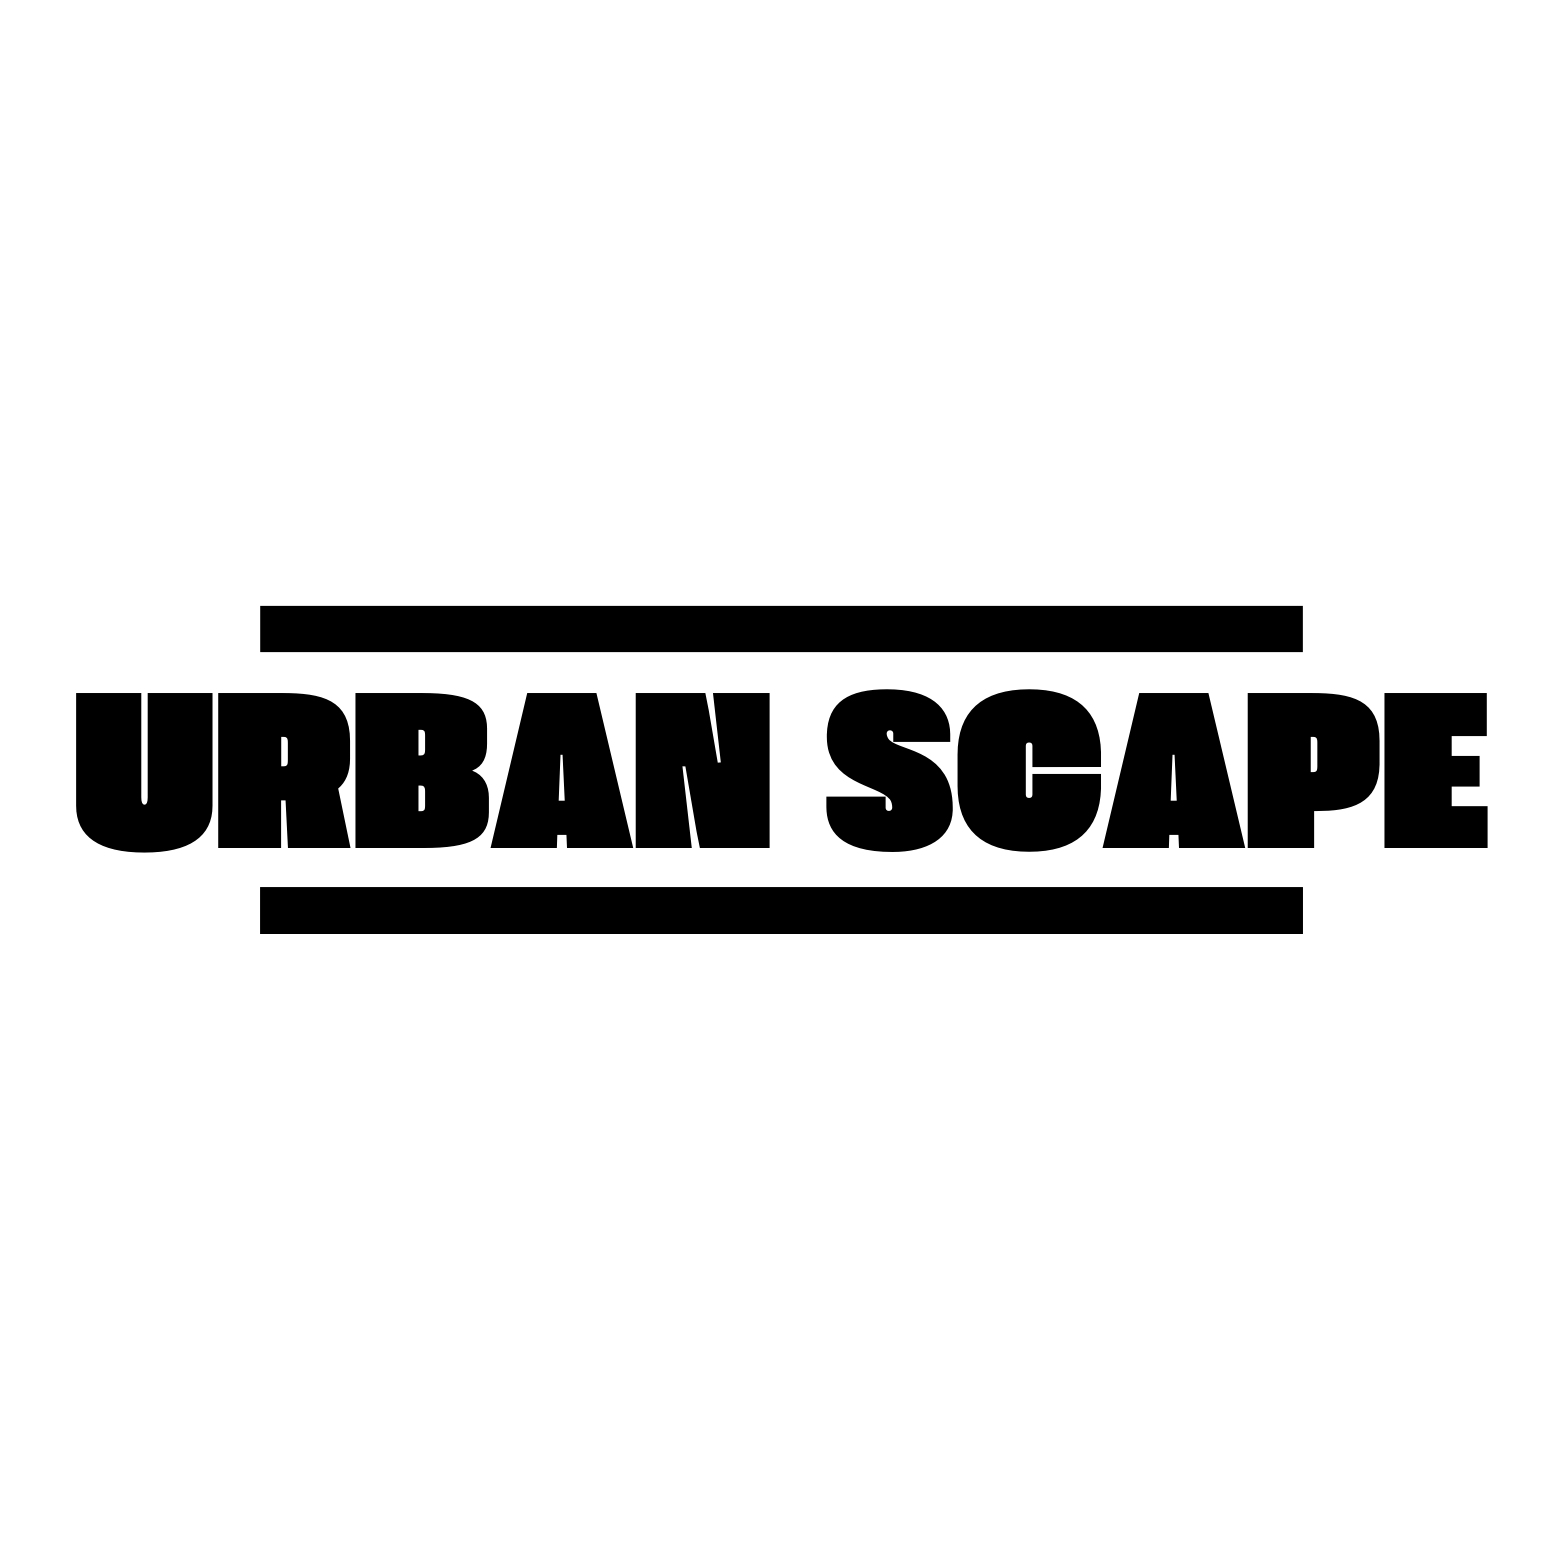 Urban Scape